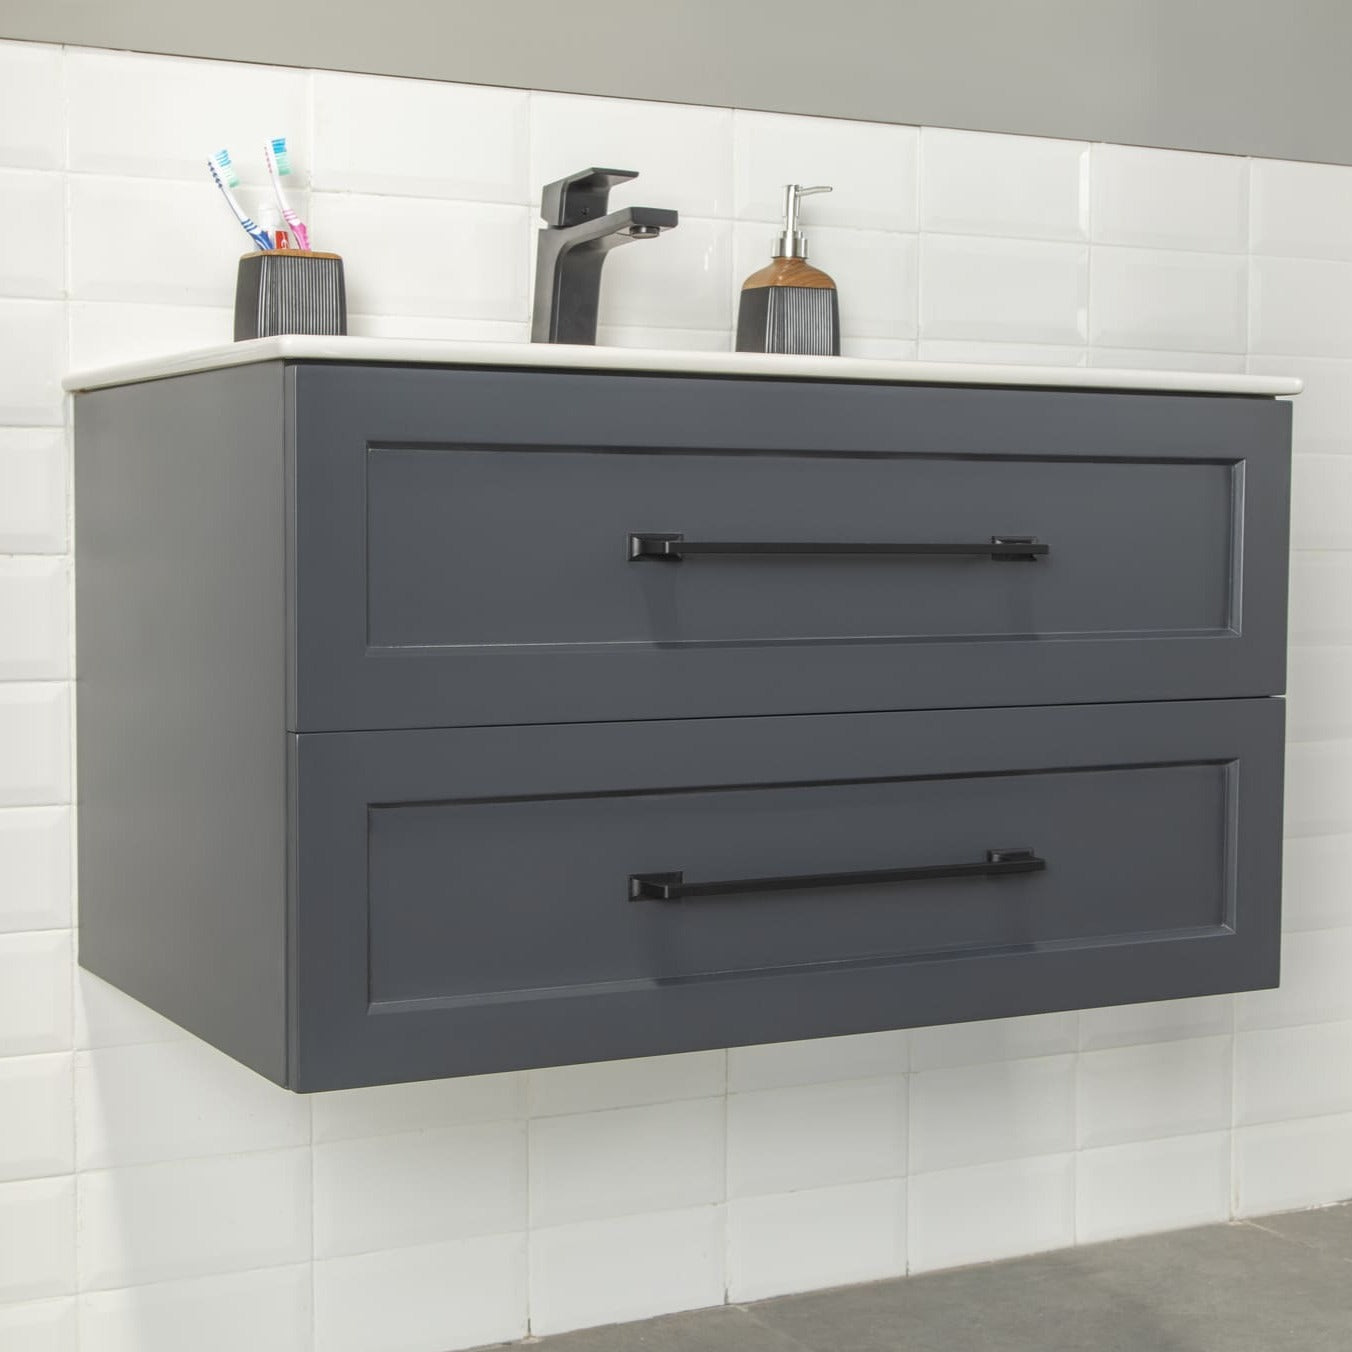 Nova Bathroom Vanity Homelero 36" #size_36" #color_dark grey #hardware_black